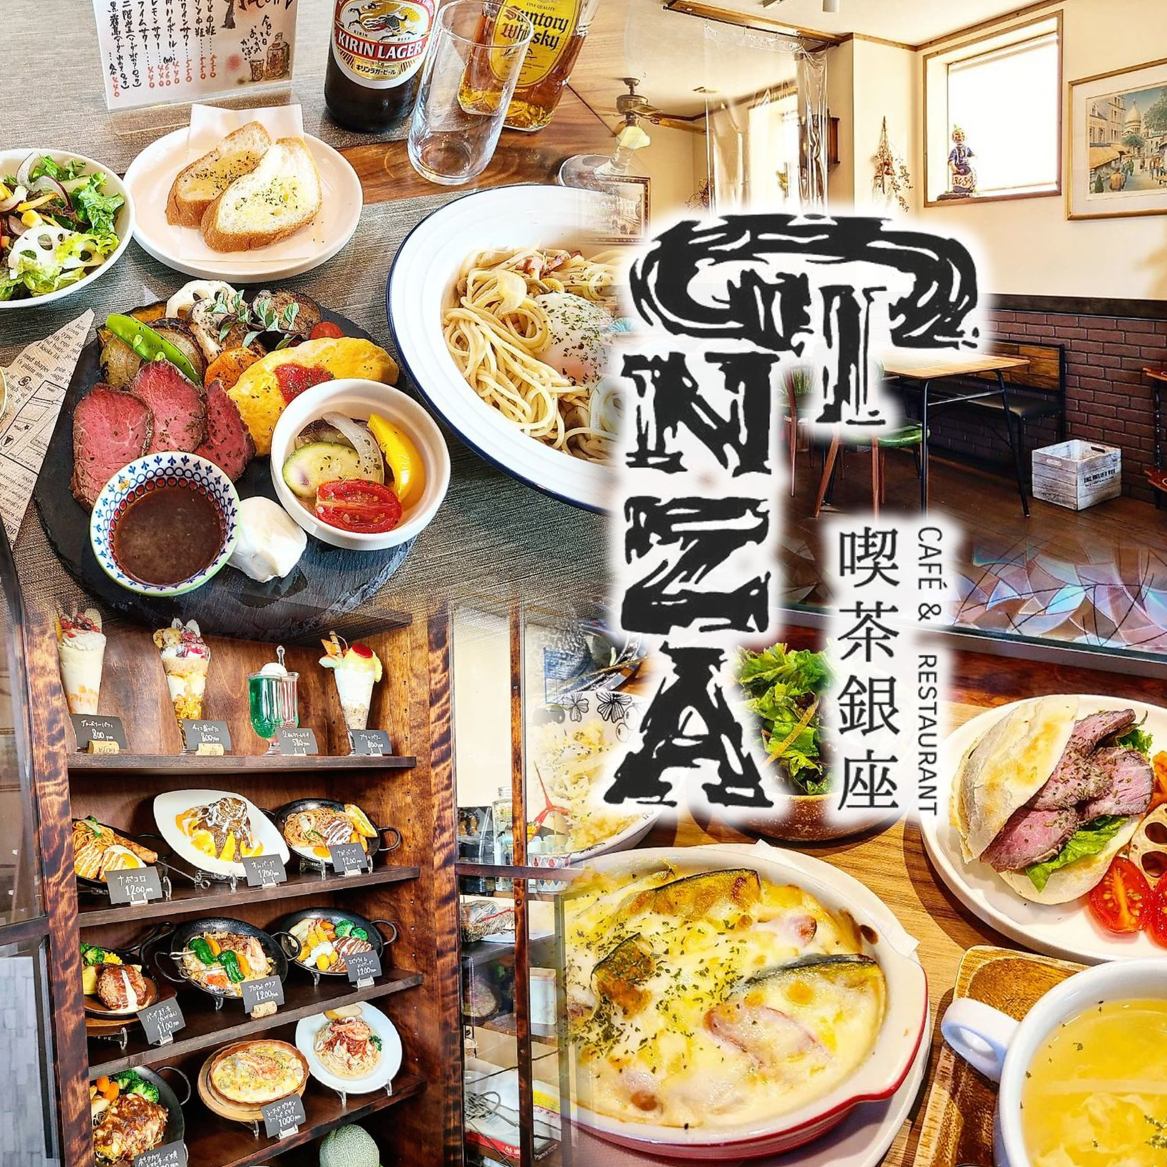 創業於1968年◇從很久以前就沒有改變的口味♪深受當地顧客喜愛的西式餐廳“Coffee GINZA”